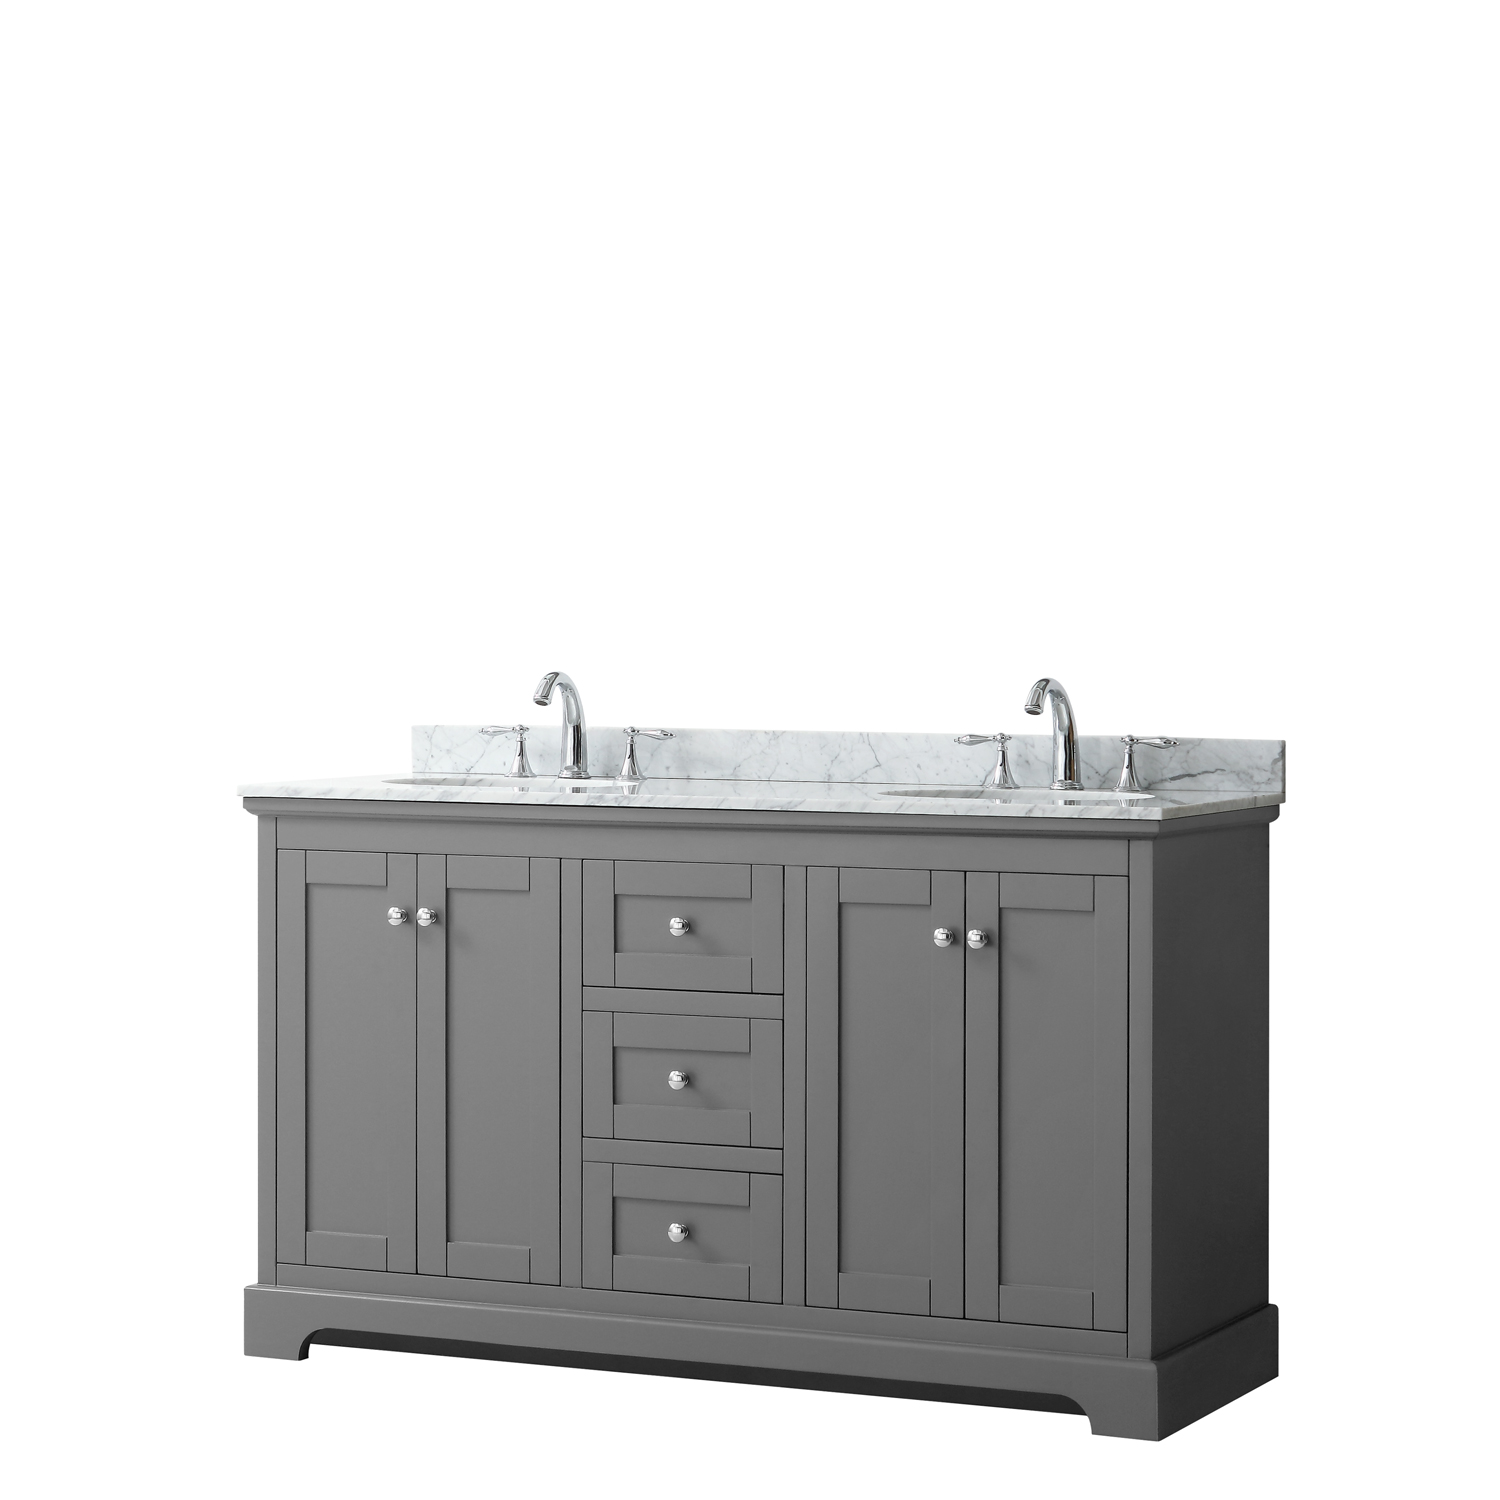 60" Double Bathroom Vanity in Dark Gray, No Countertop, No Sinks, and No Mirror